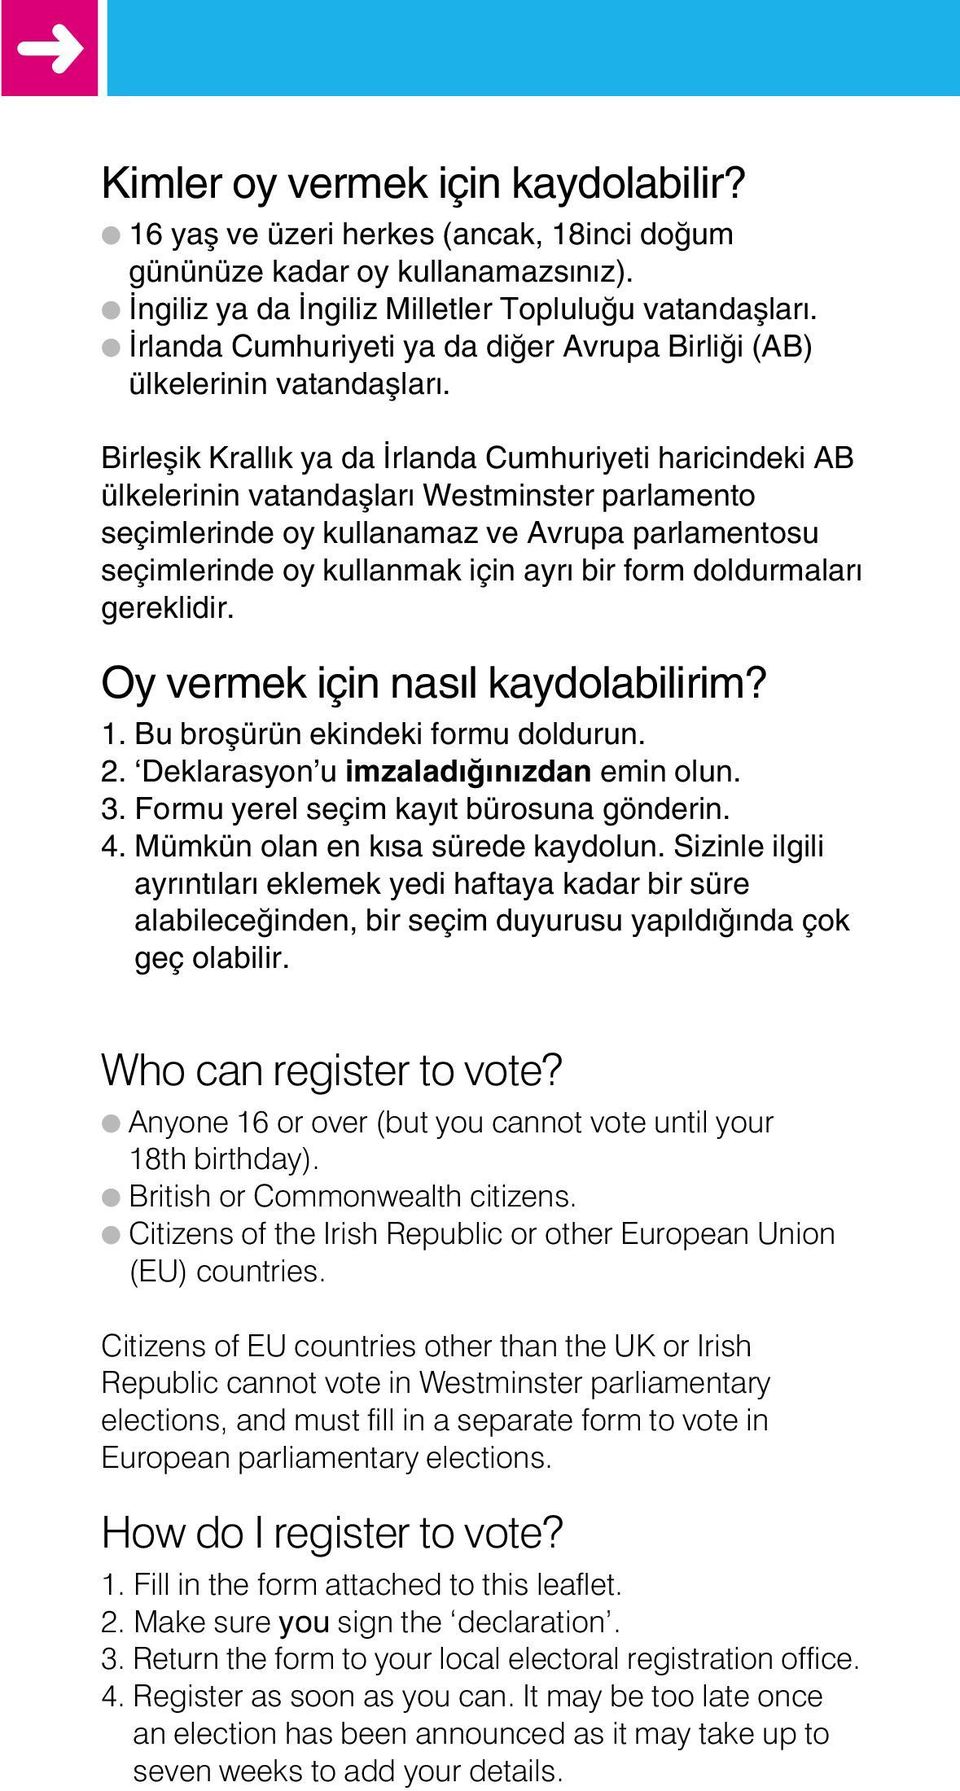 Birleflik Krall k ya da rlanda Cumhuriyeti haricindeki AB ülkelerinin vatandafllar Westminster parlamento seçimlerinde oy kullanamaz ve Avrupa parlamentosu seçimlerinde oy kullanmak için ayr bir form